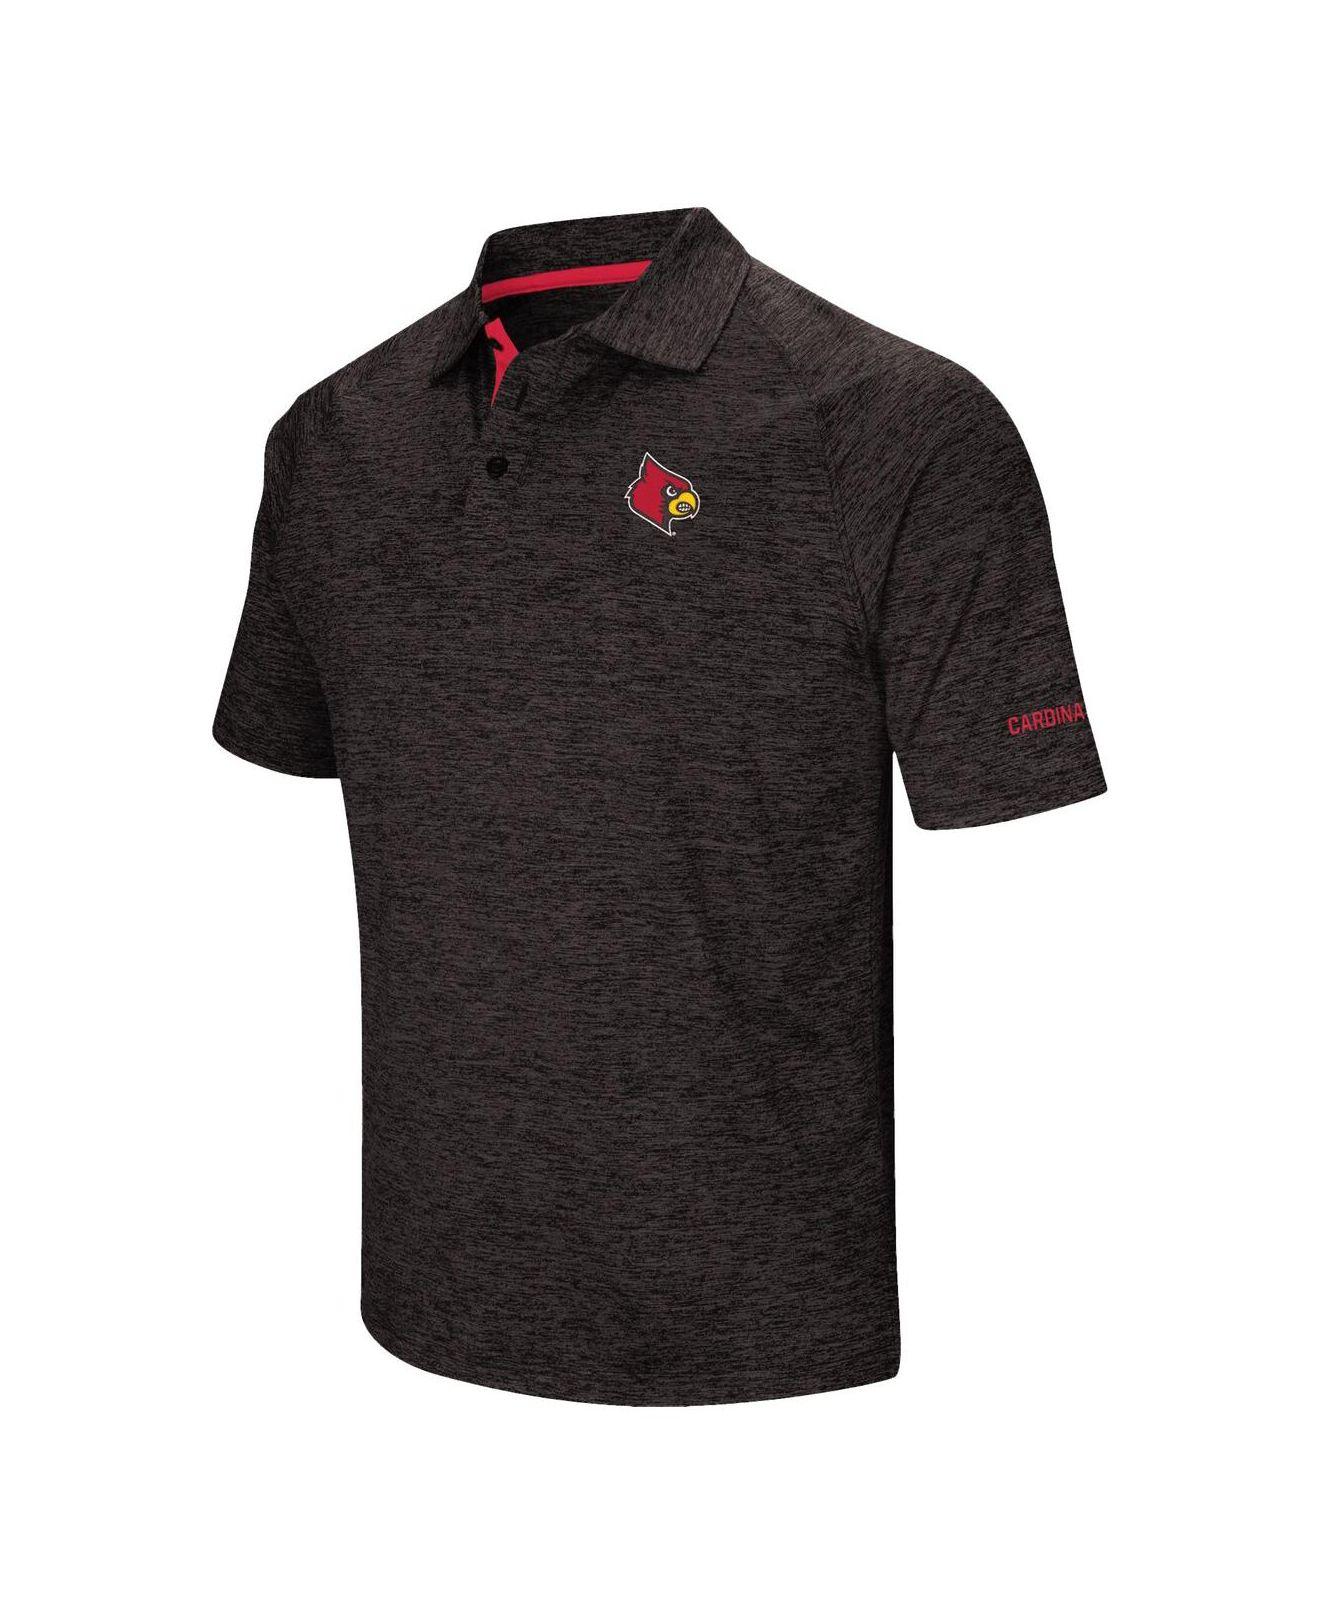 louisville cardinals button up shirt